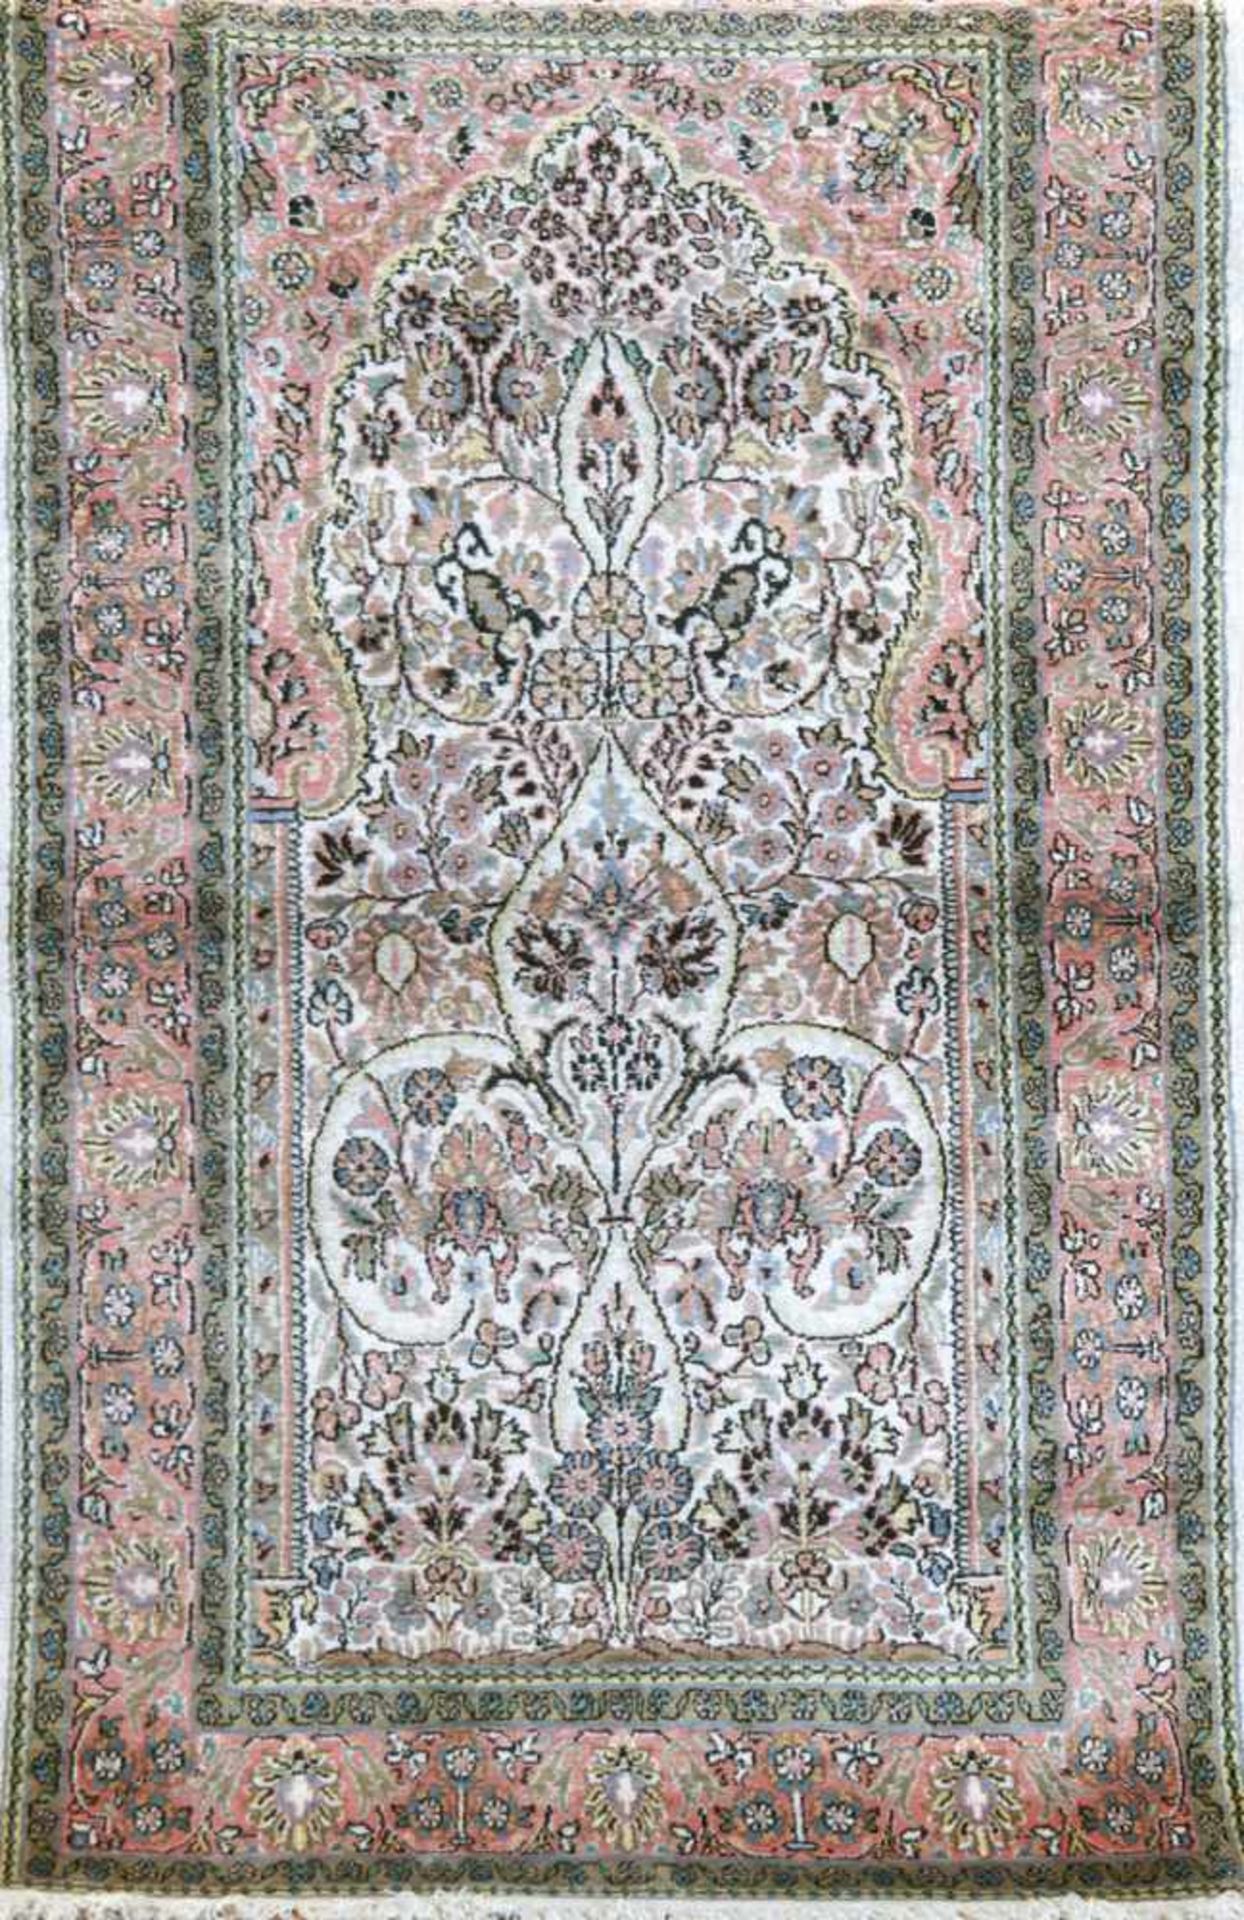 Kaschmir, Indien, mercersierte Baumwolle, hellgundig mit floraler Musterung, mitZertifikat,156x90